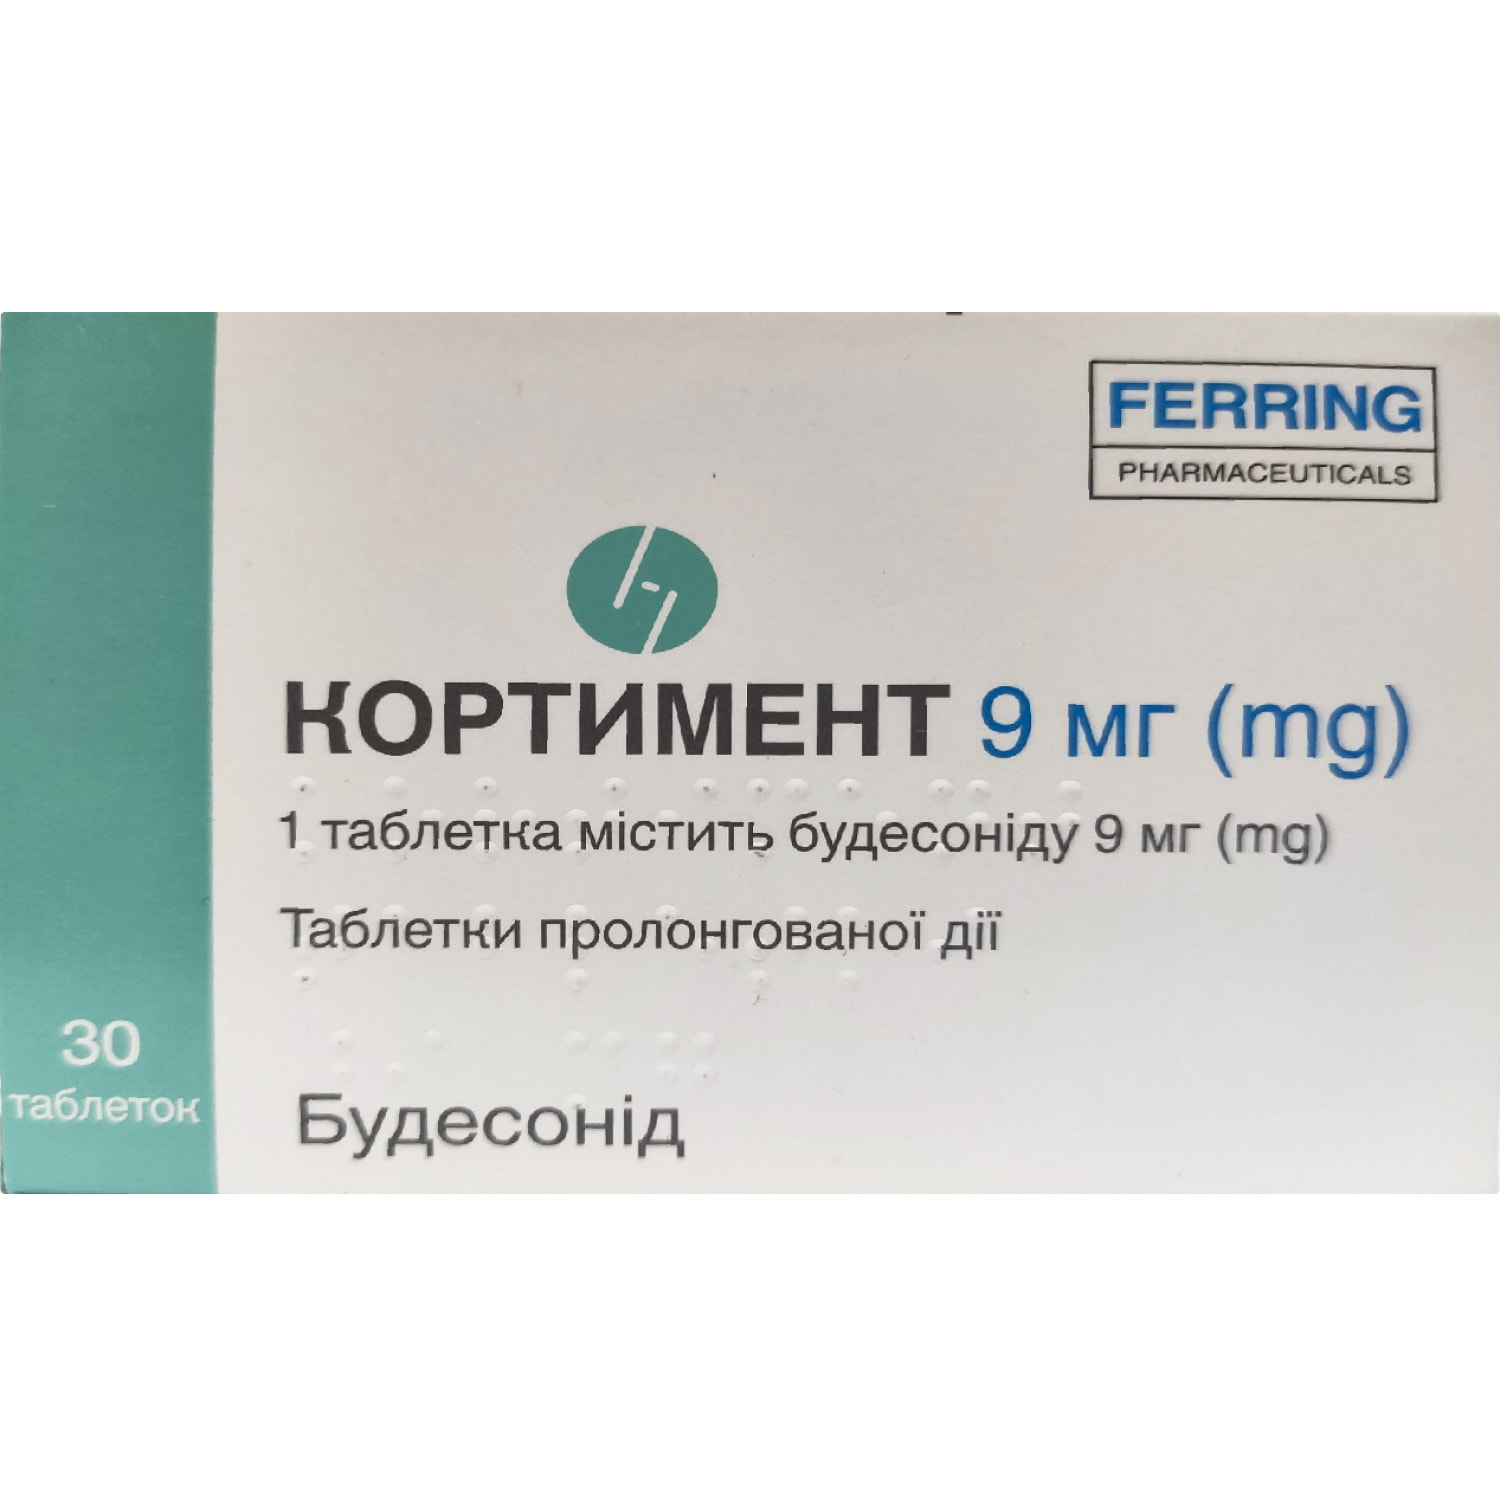 Кортимент таблетки пролонгованої дії по 9 мг 3 блістера по 10 шт .